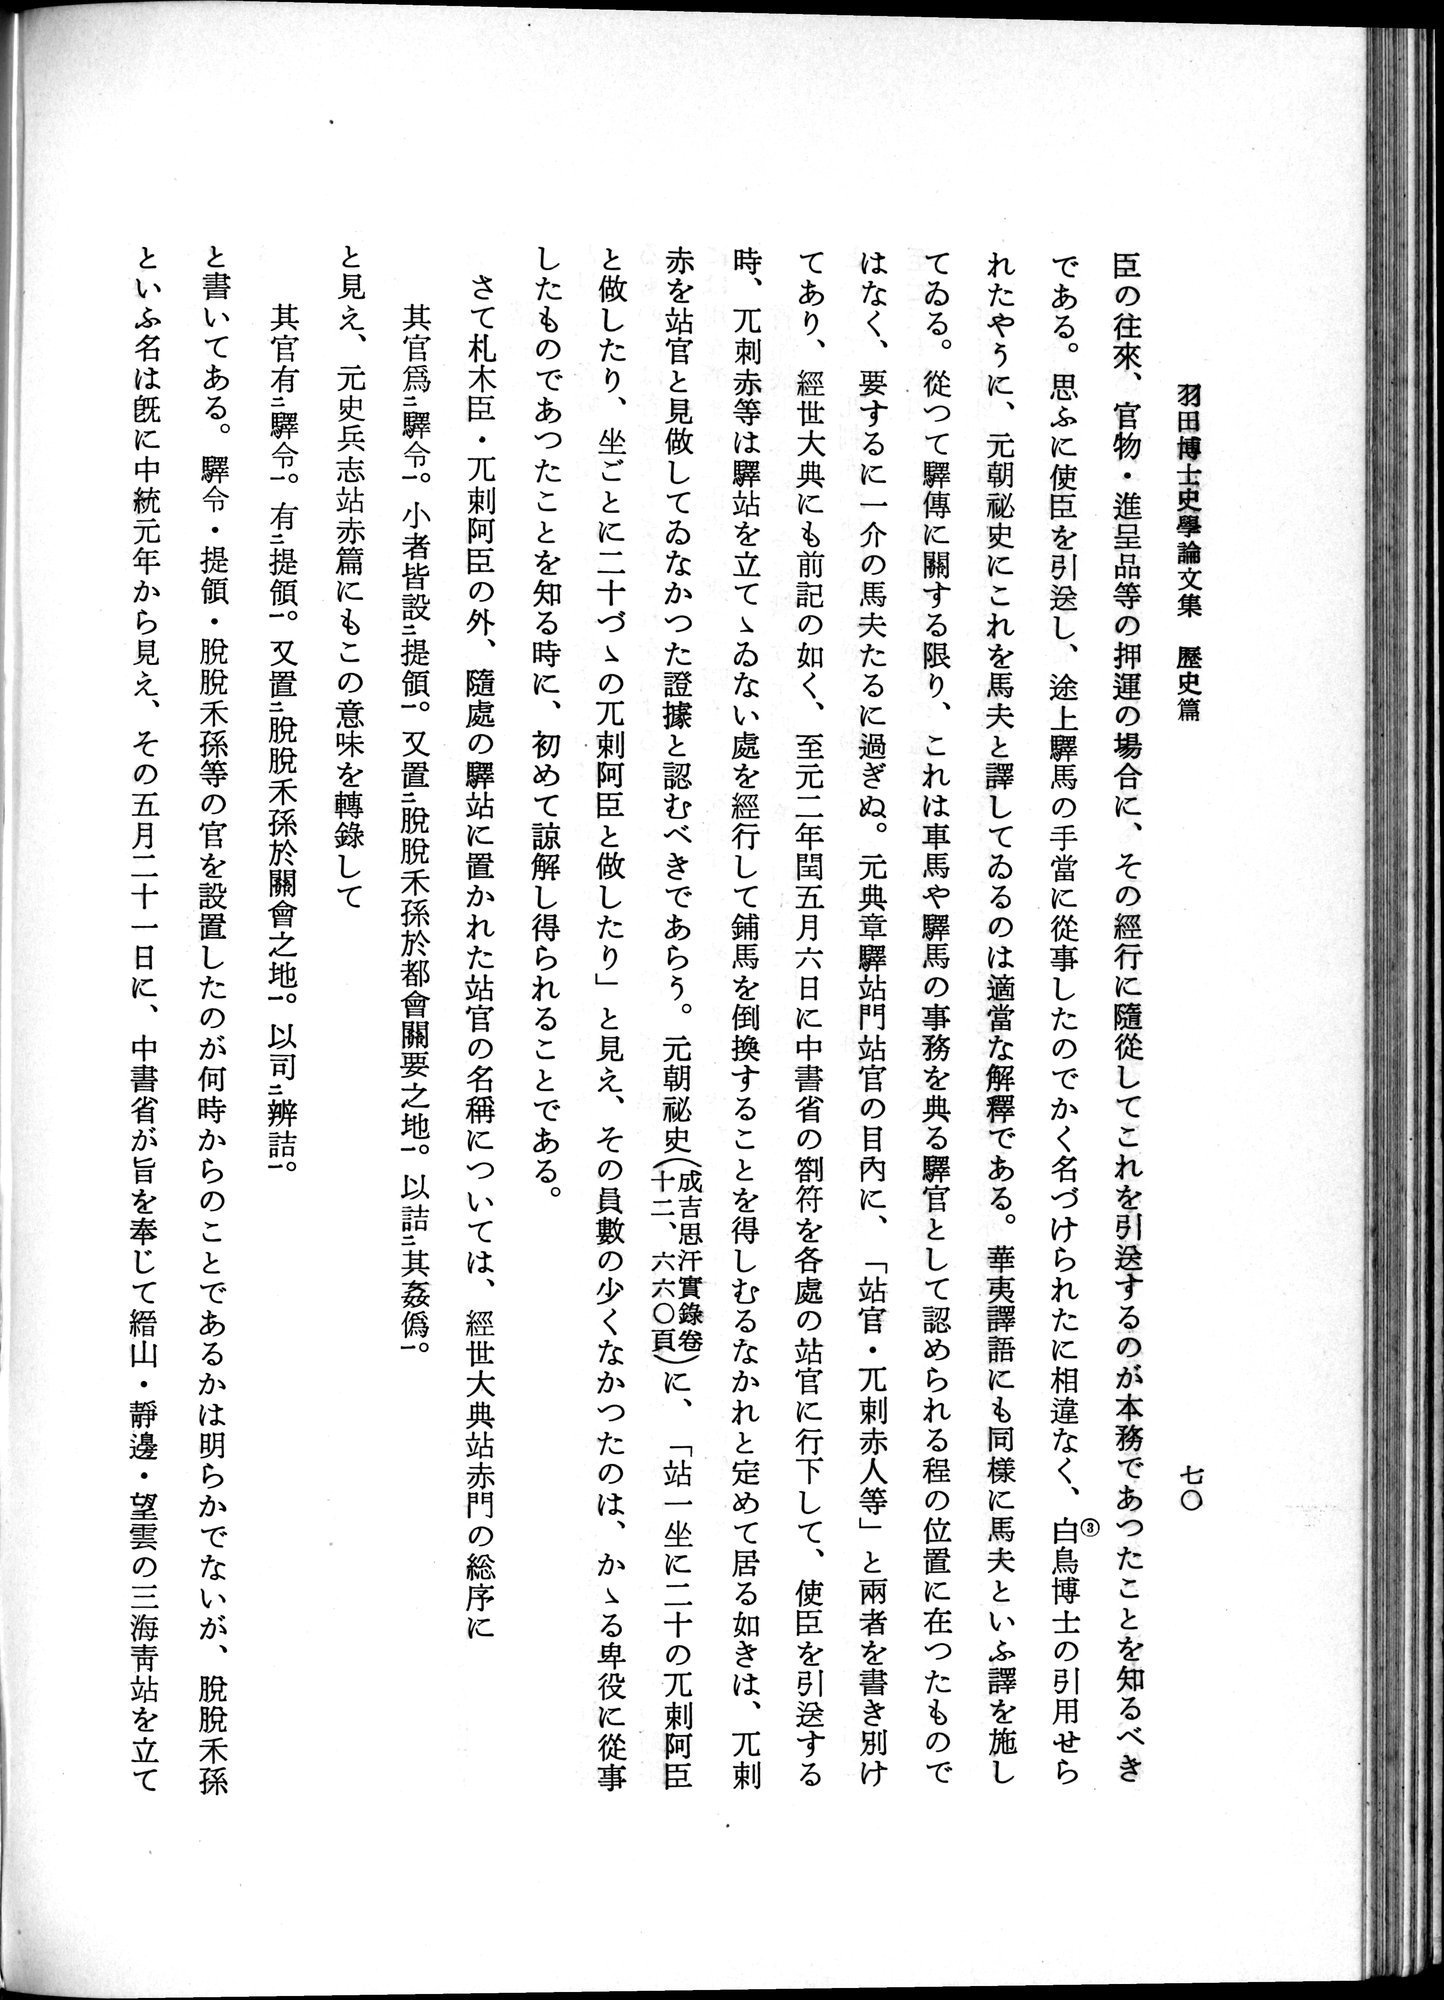 羽田博士史学論文集 : vol.1 / Page 108 (Grayscale High Resolution Image)